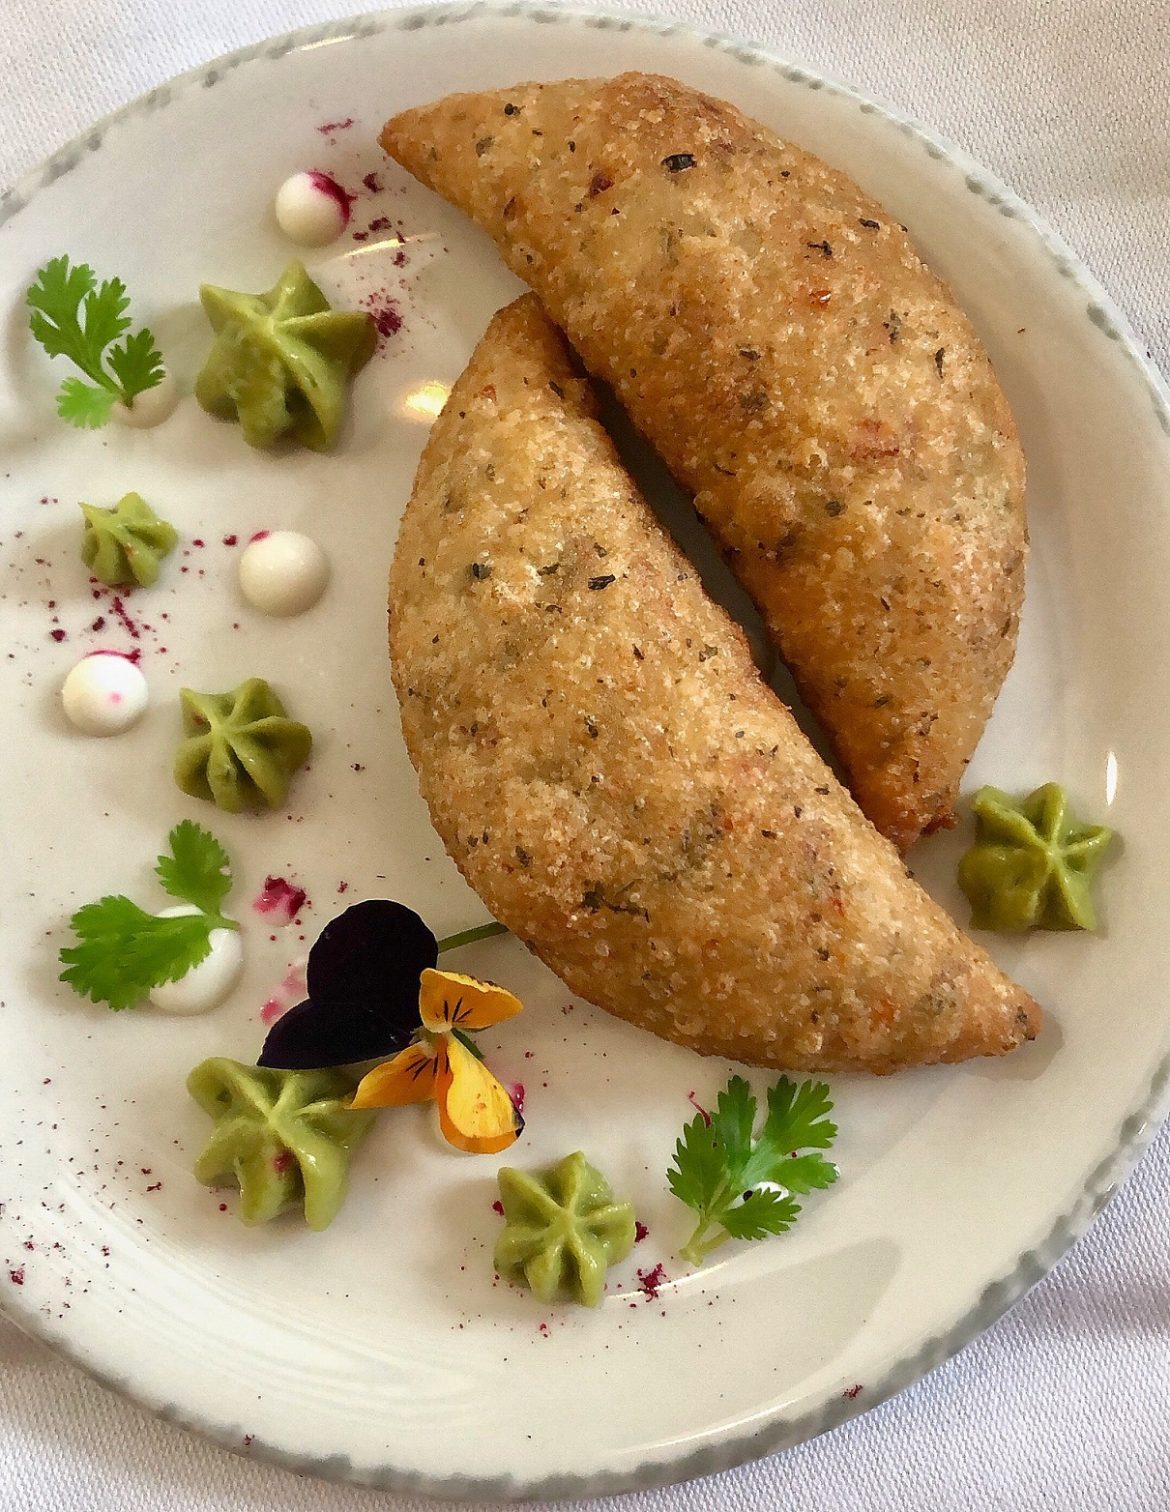 مطعم ماستر شيف ذا تي في إكسبيرينس يقدم قائمة طعام جديدة إحتفالاً بالعيد